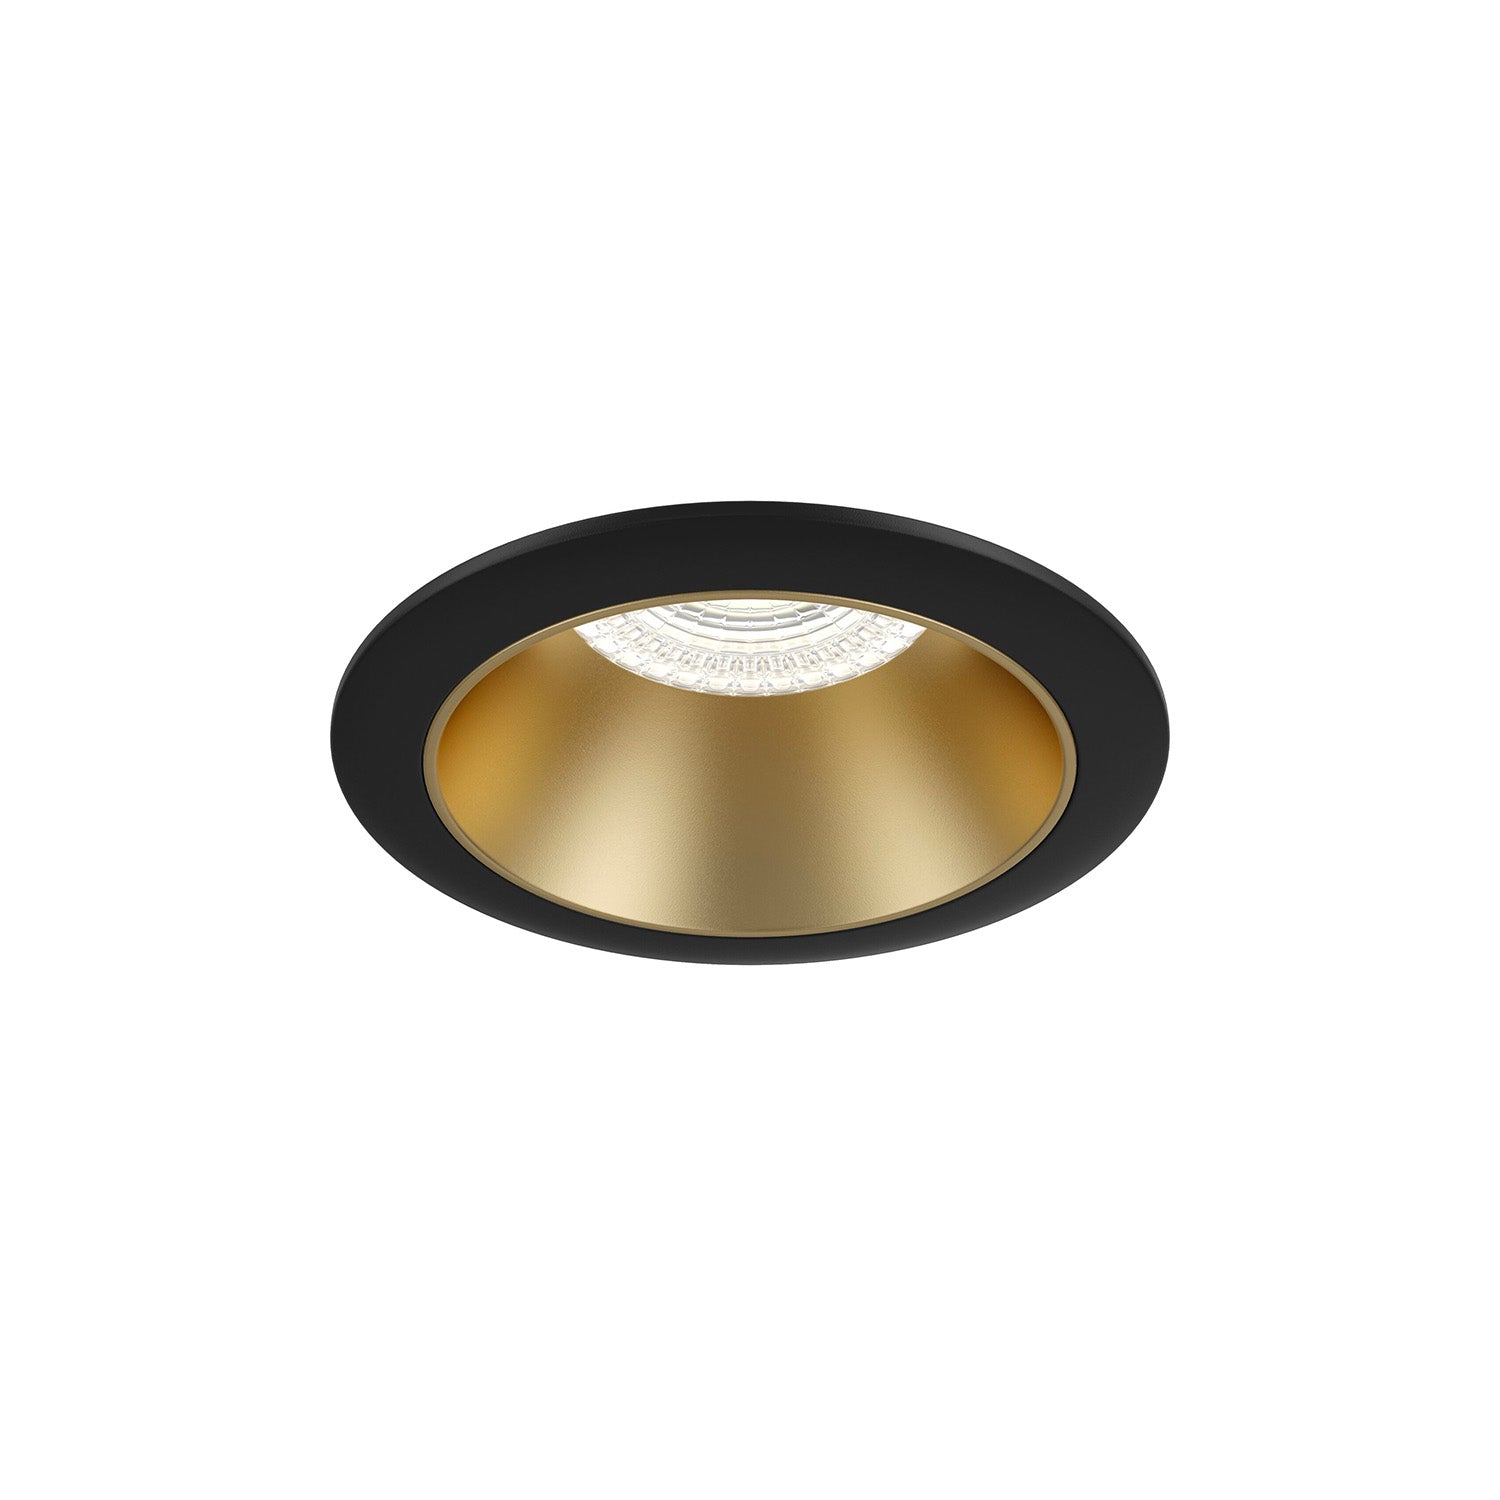 SHARE - Designer round recessed spotlight diameter 85mm